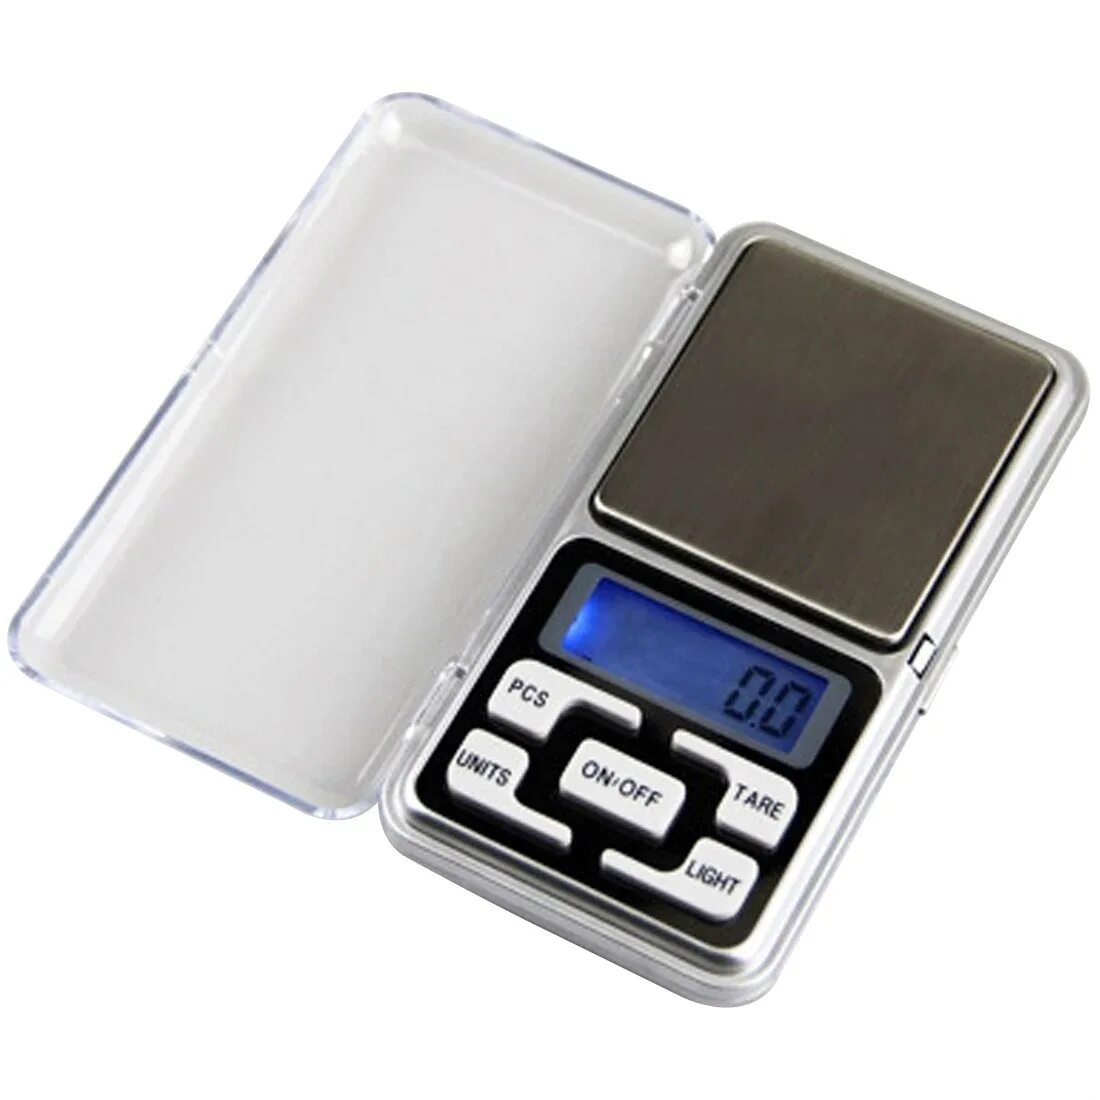 Весы Digital Scale 500g/0.01g. Ювелирные весы MH-Series 500 / Pocket Scale / карманные весы /. Весы ювелирные MG-100 (0.01G-100g). Весы электронные Pocket Scale MN-200. Купить мини весы